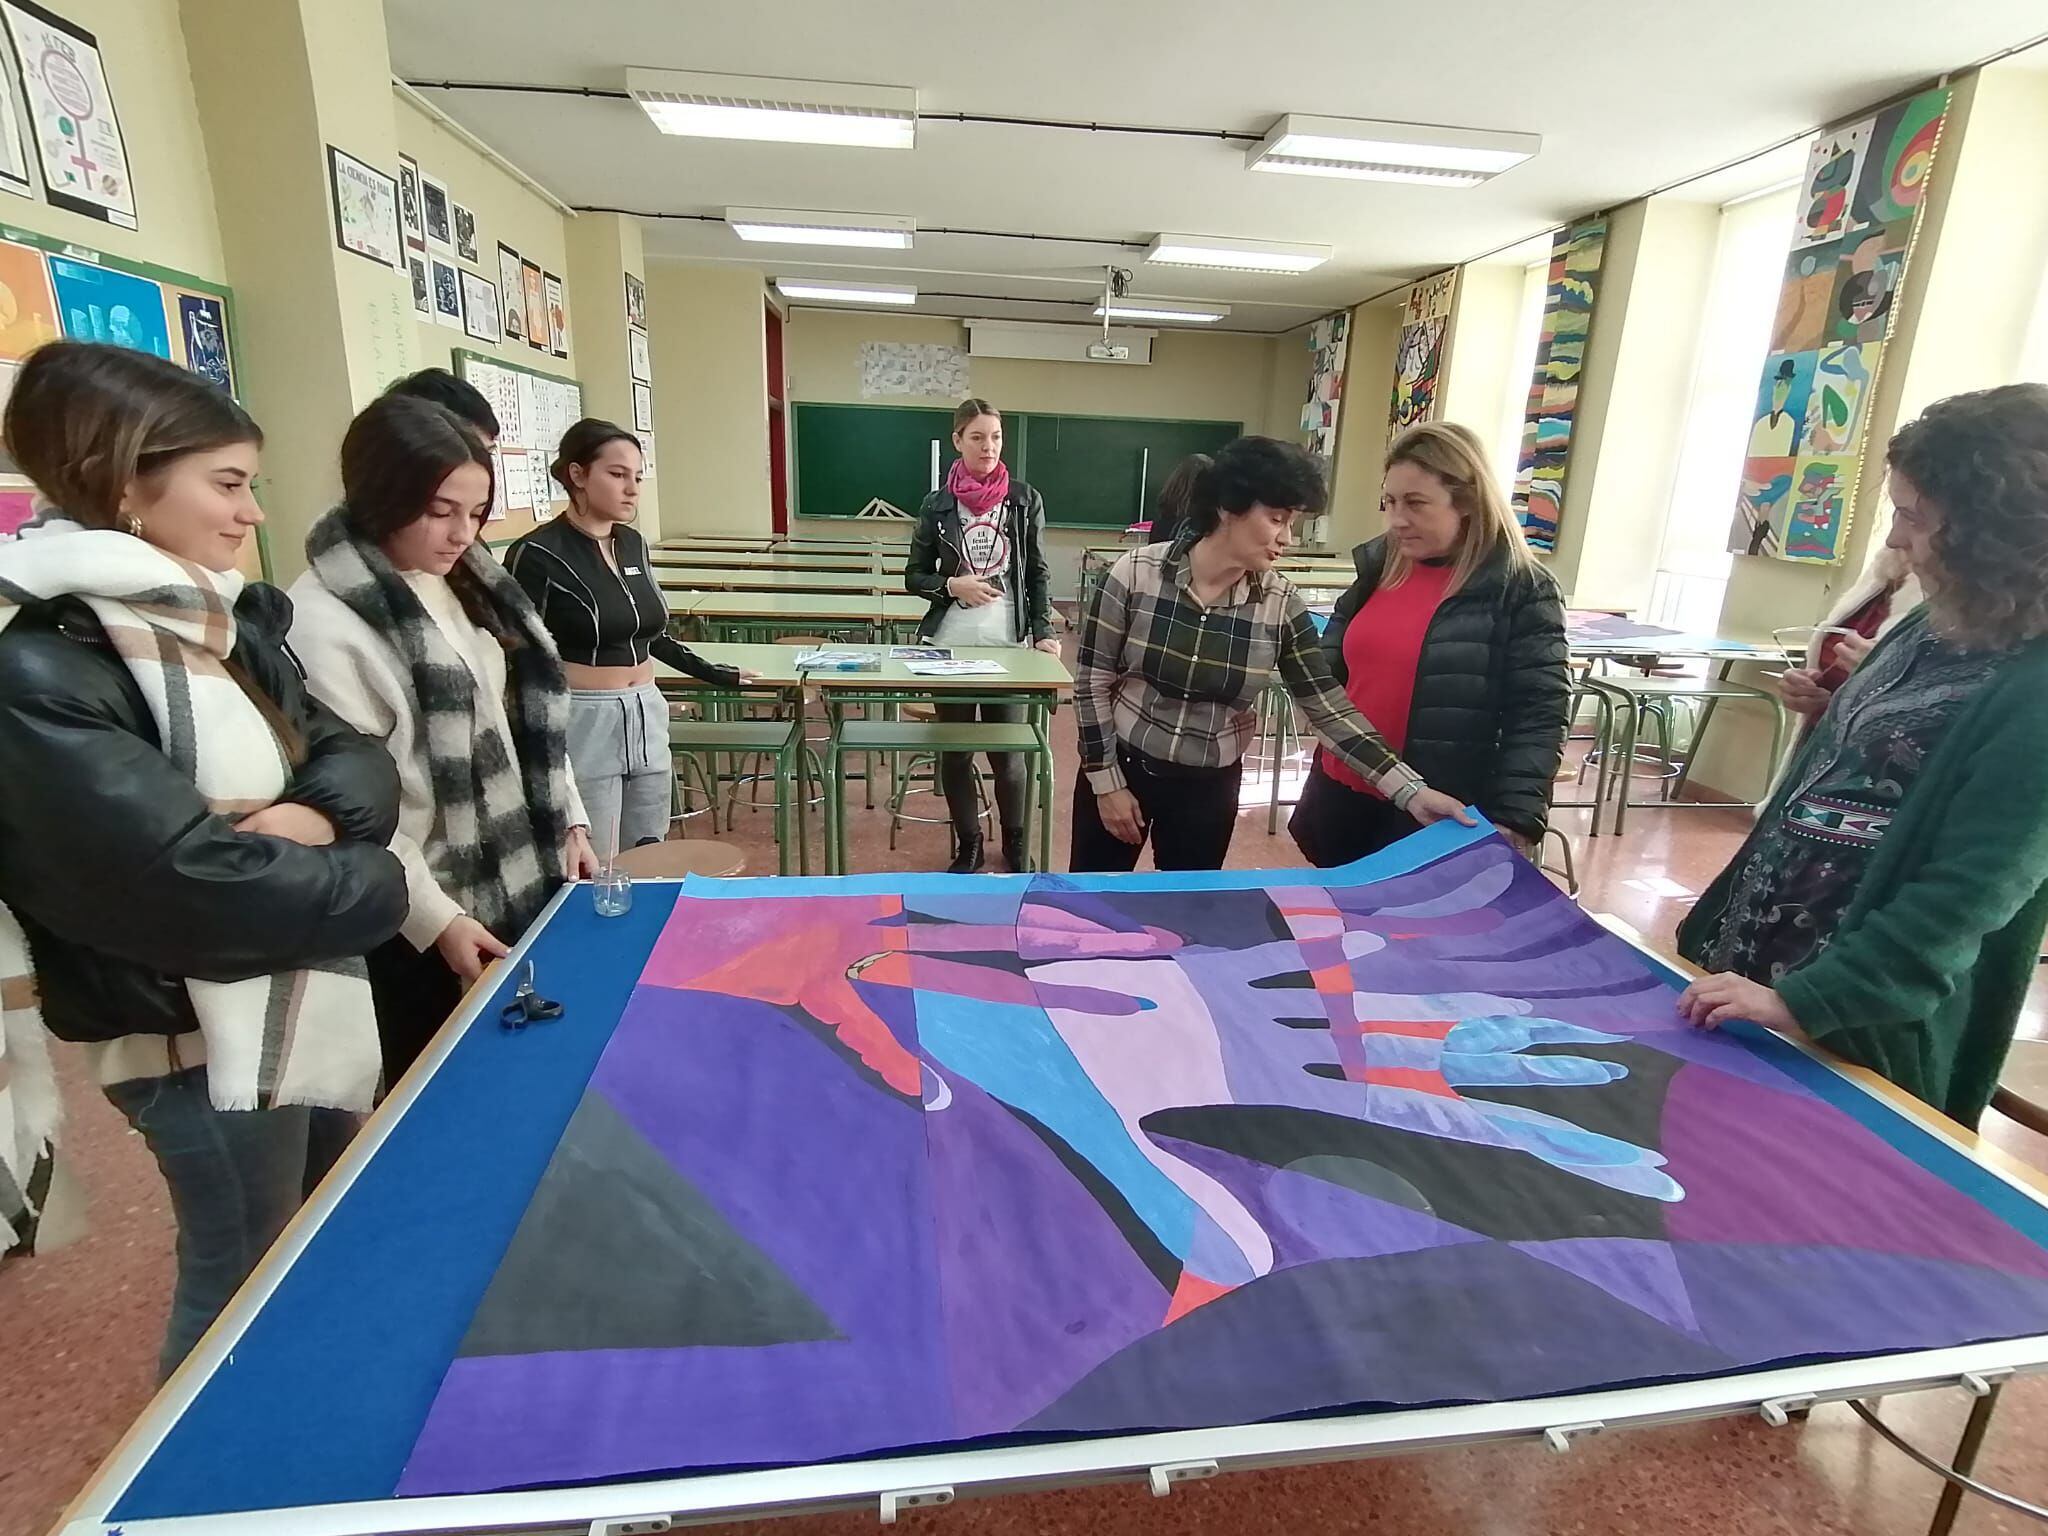 Alumnas del instituto público La Ería, en Oviedo, presentan a la consejera de Educación de Asturias (de rojo), Lydia Espina, uno de los carteles preparados con motivo del Día Internacional de la Eliminación de la Violencia contra las Mujeres, el pasado mes de noviembre.